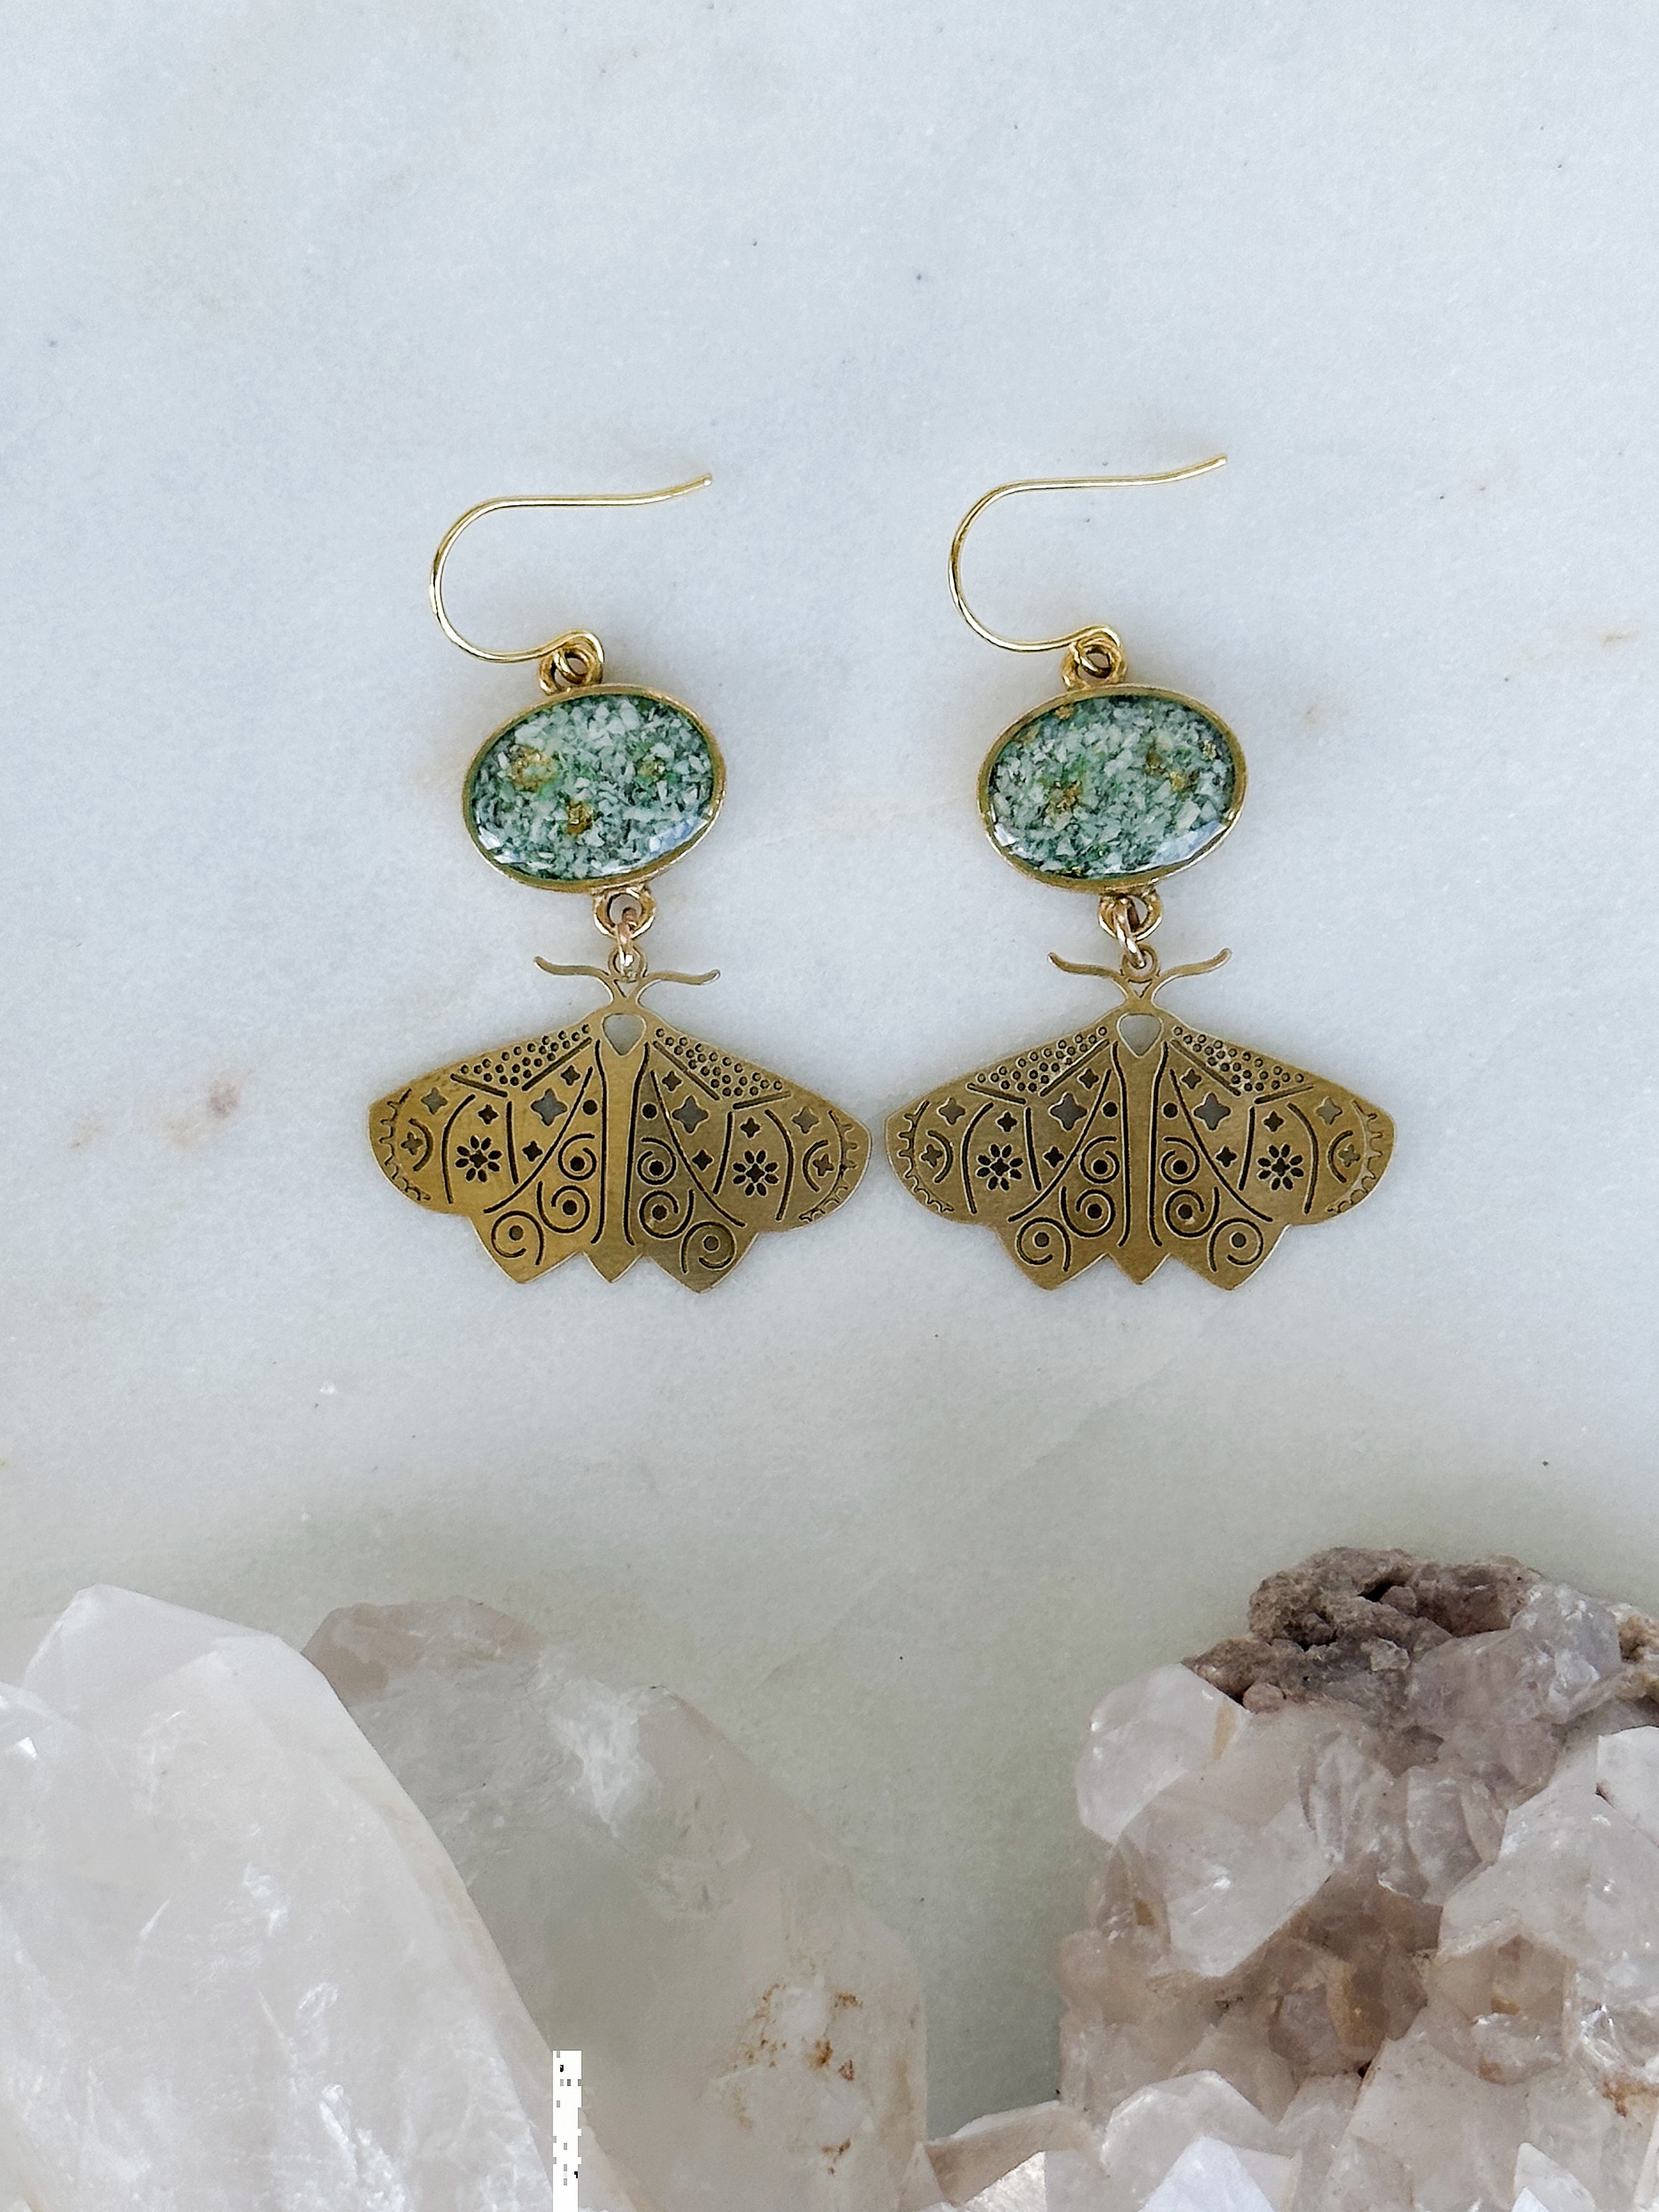 Moth earings with gemstones